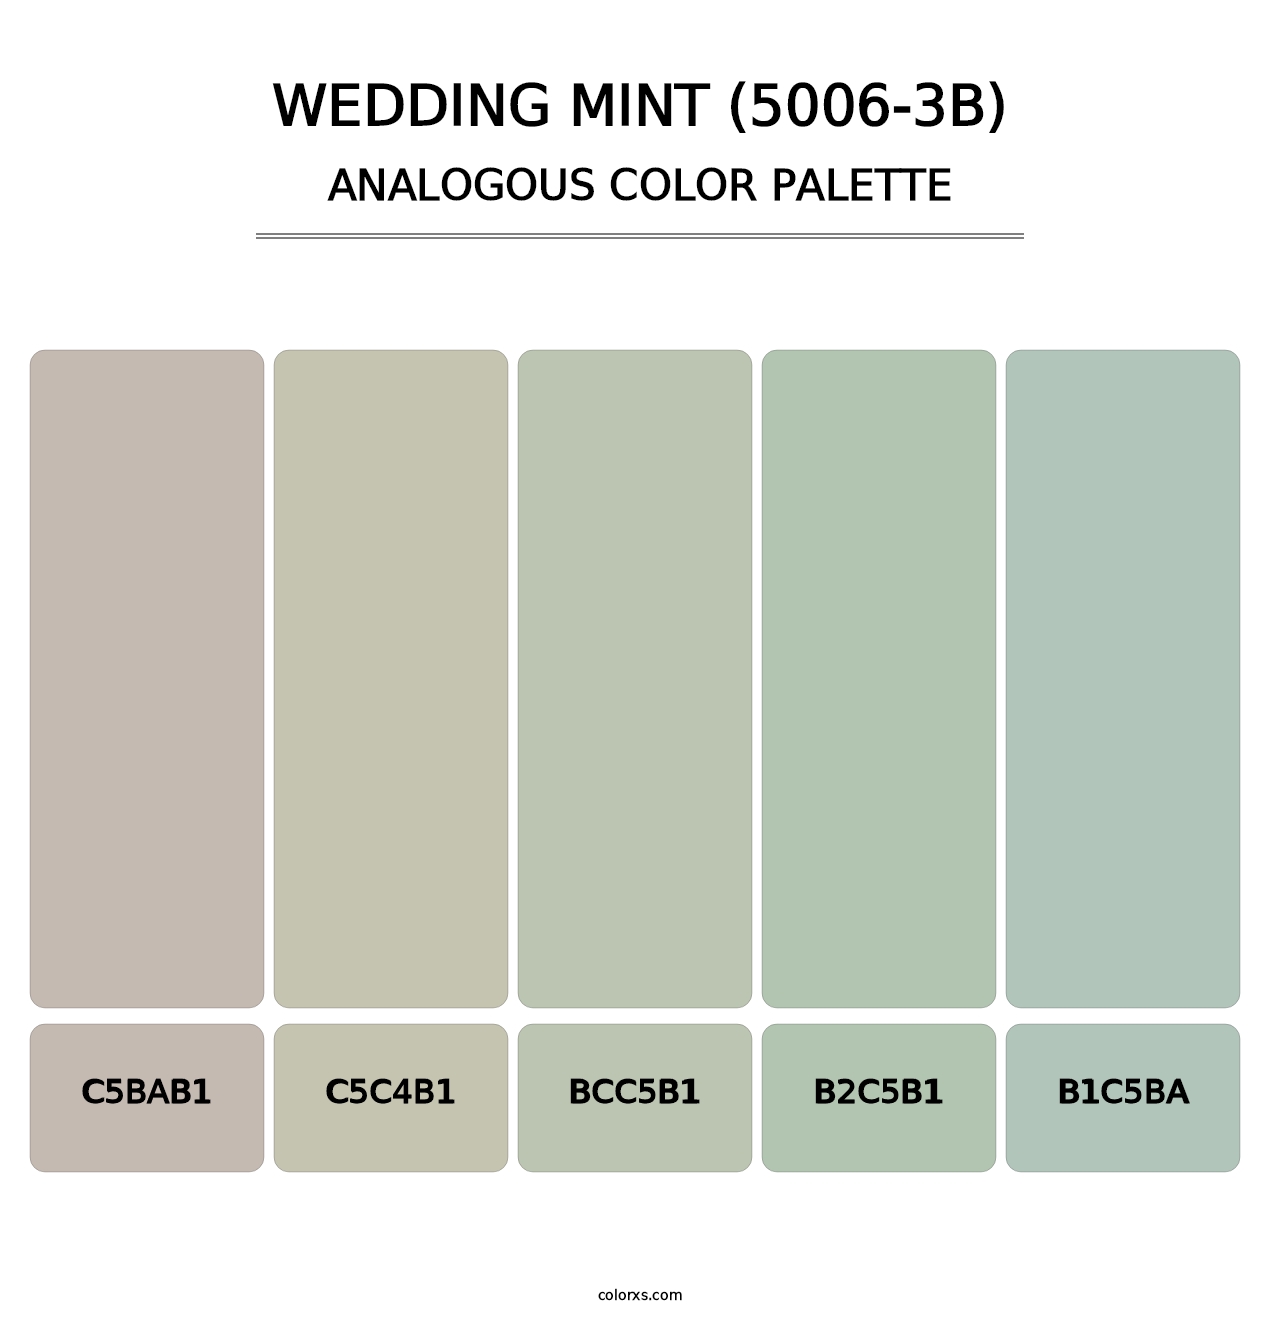 Wedding Mint (5006-3B) - Analogous Color Palette